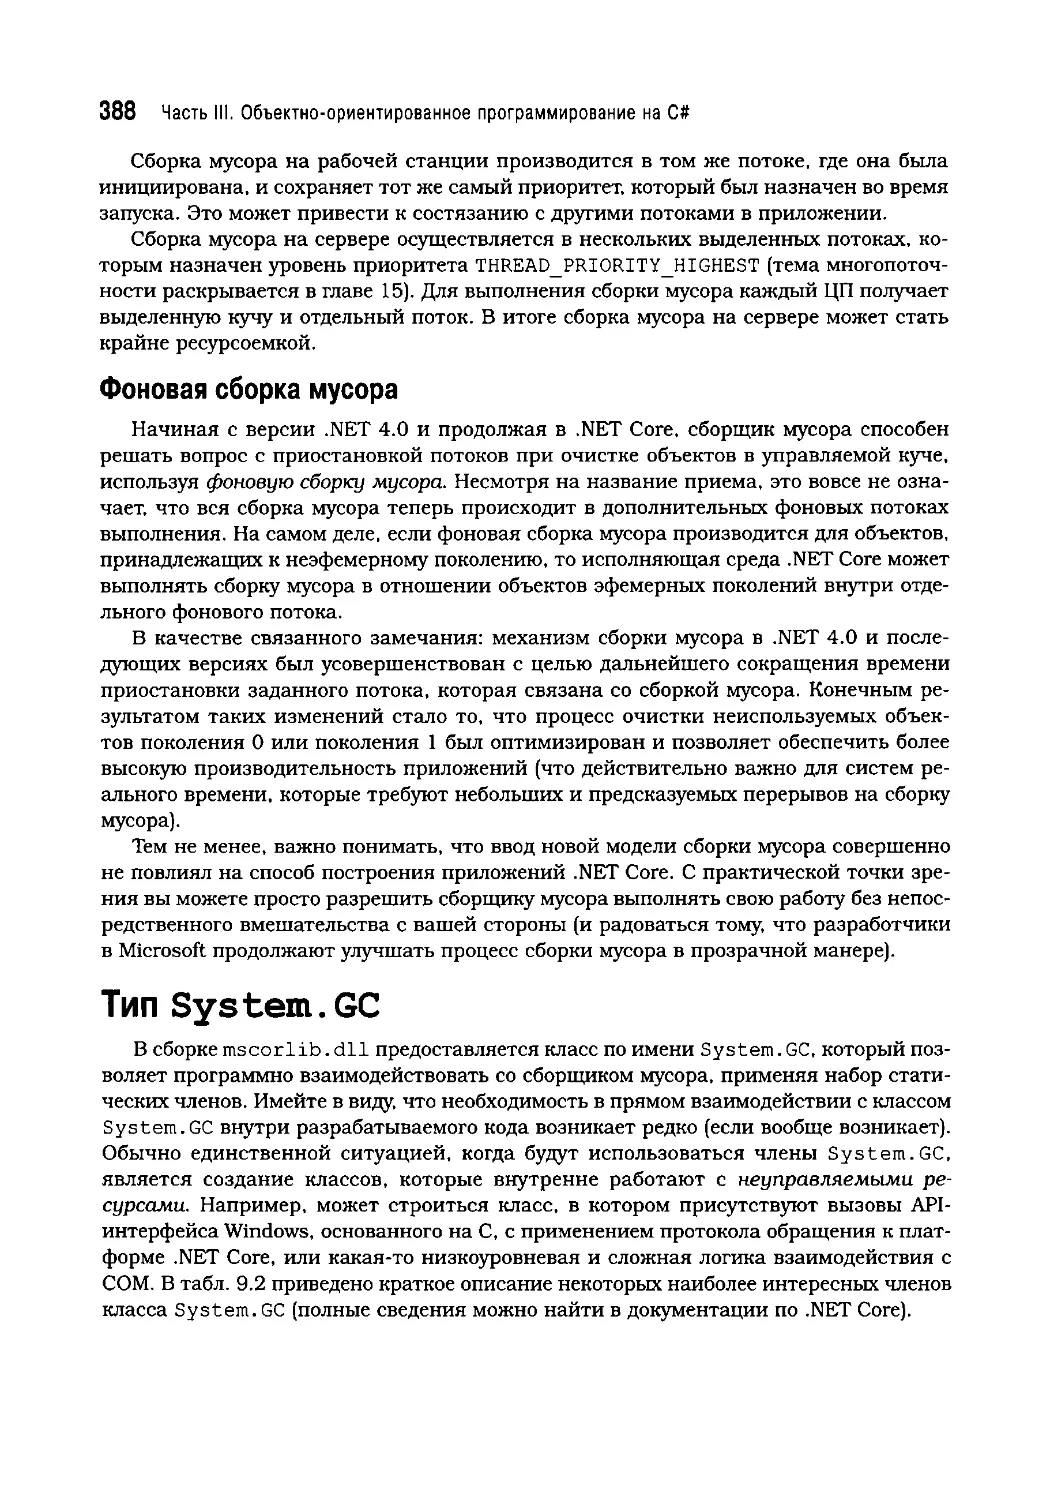 Тип System.GC